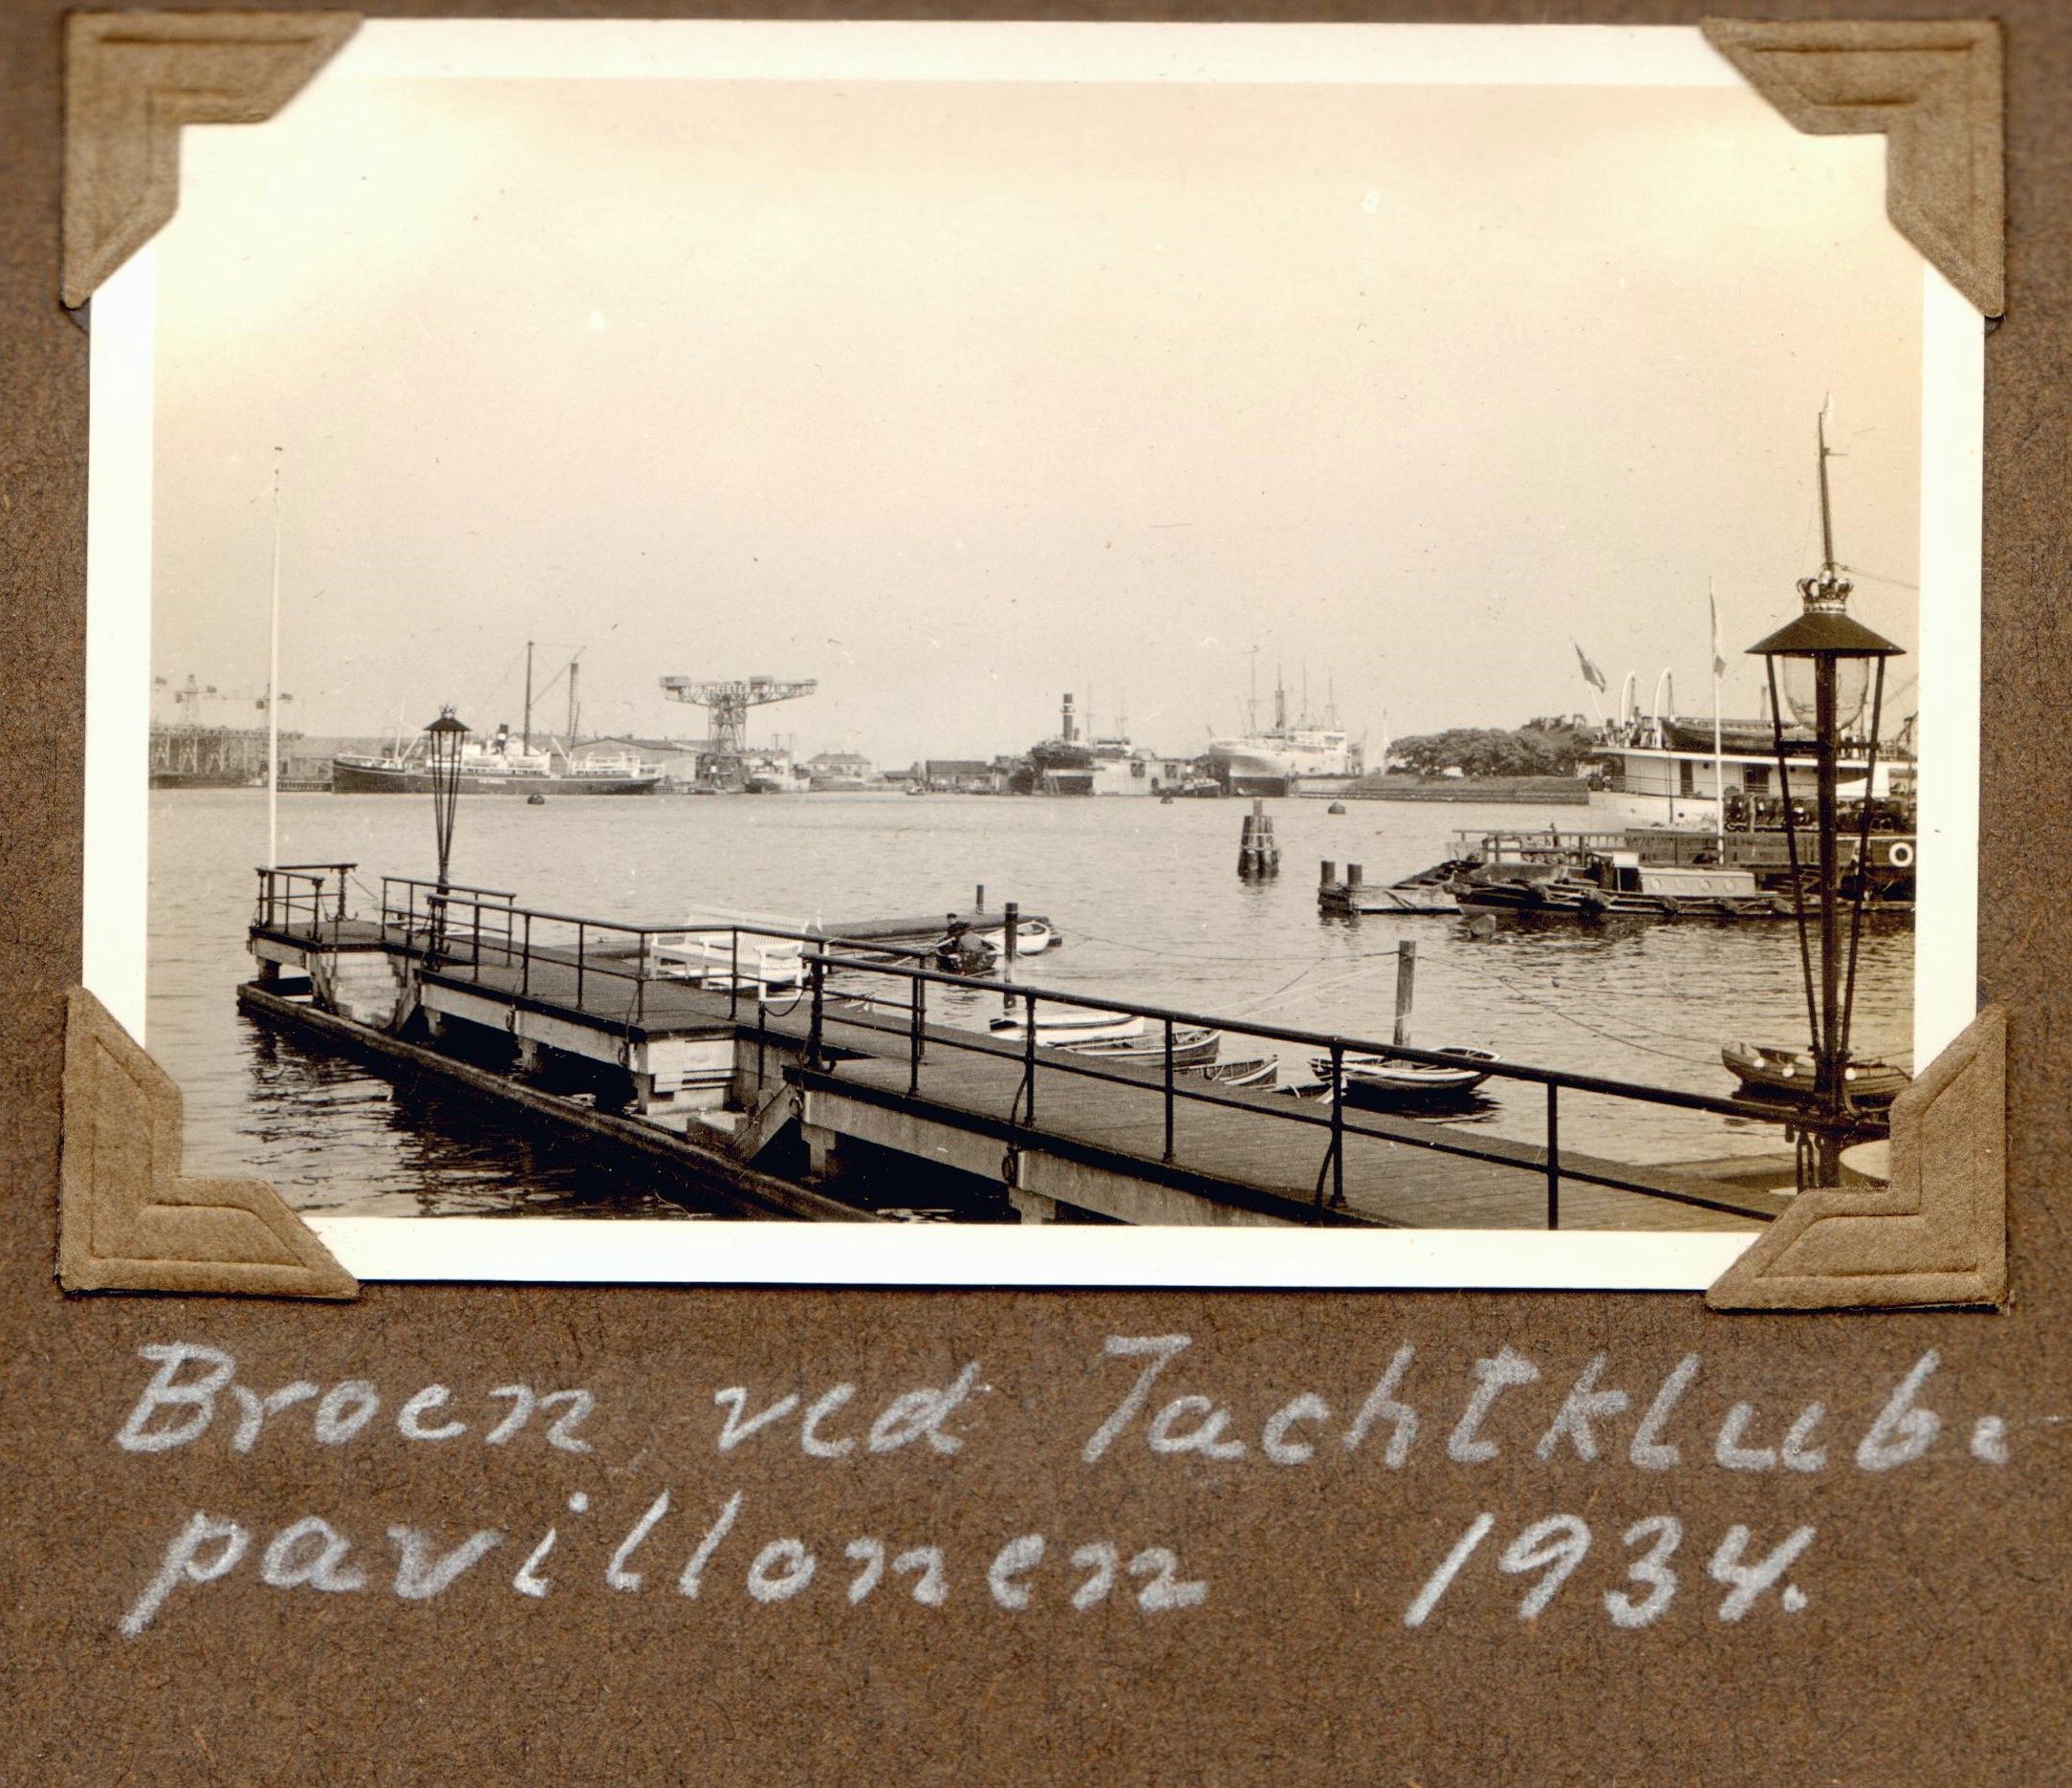 70.21 Broen ved Yachtklubpavillonen 1934